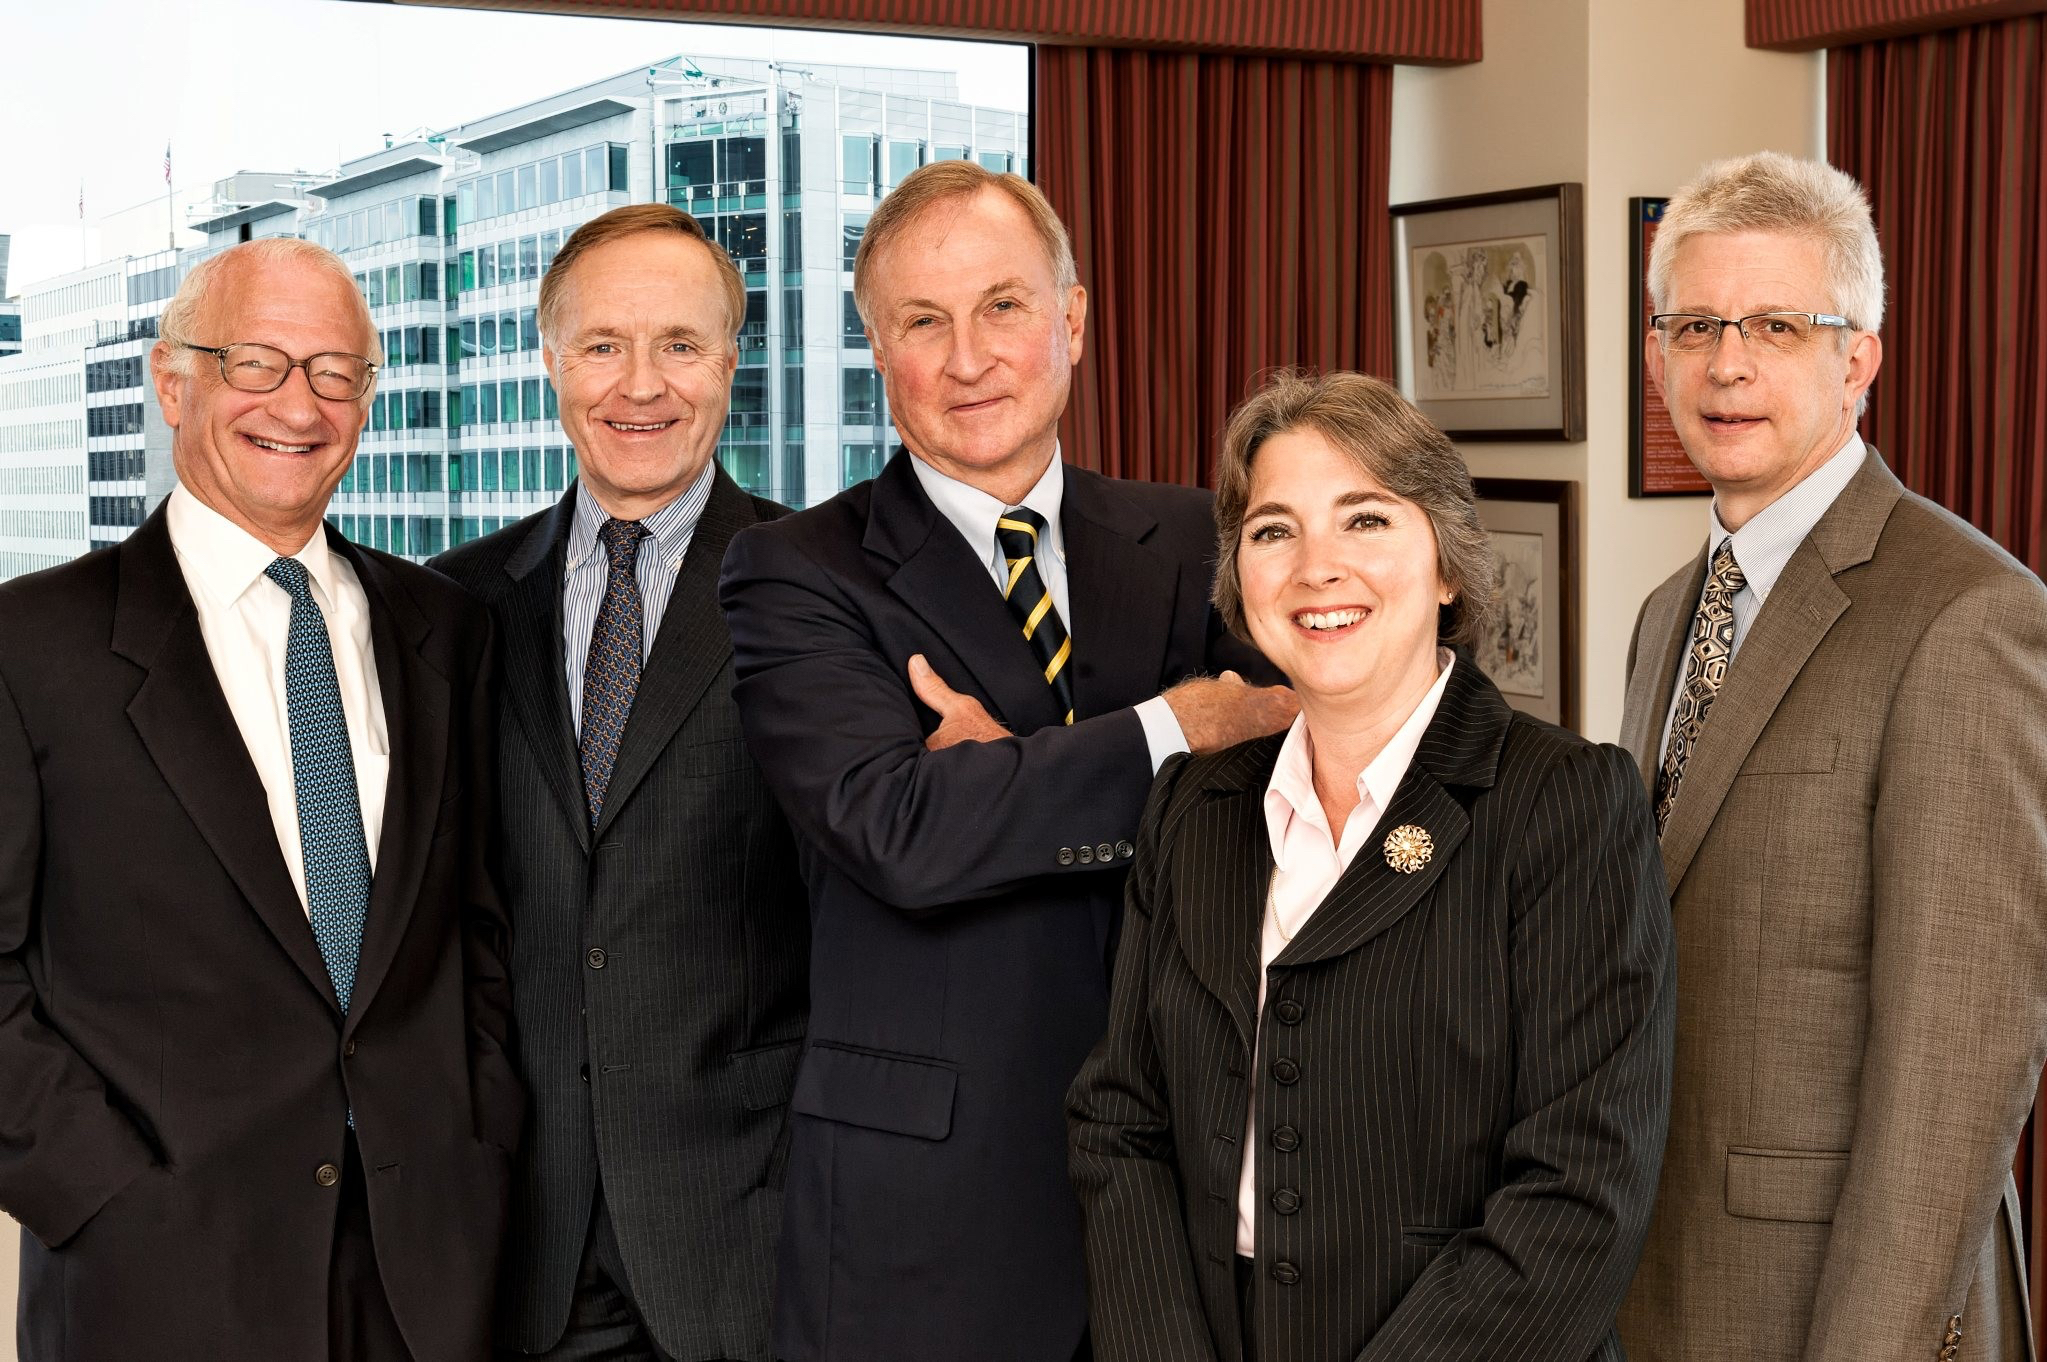 PCAOB Board Members, 2015. Steven B. Harris, Lewis H. Ferguson III, Chairman James R. Doty, Jeanette M. Franzel, and Jay D. Hanson.